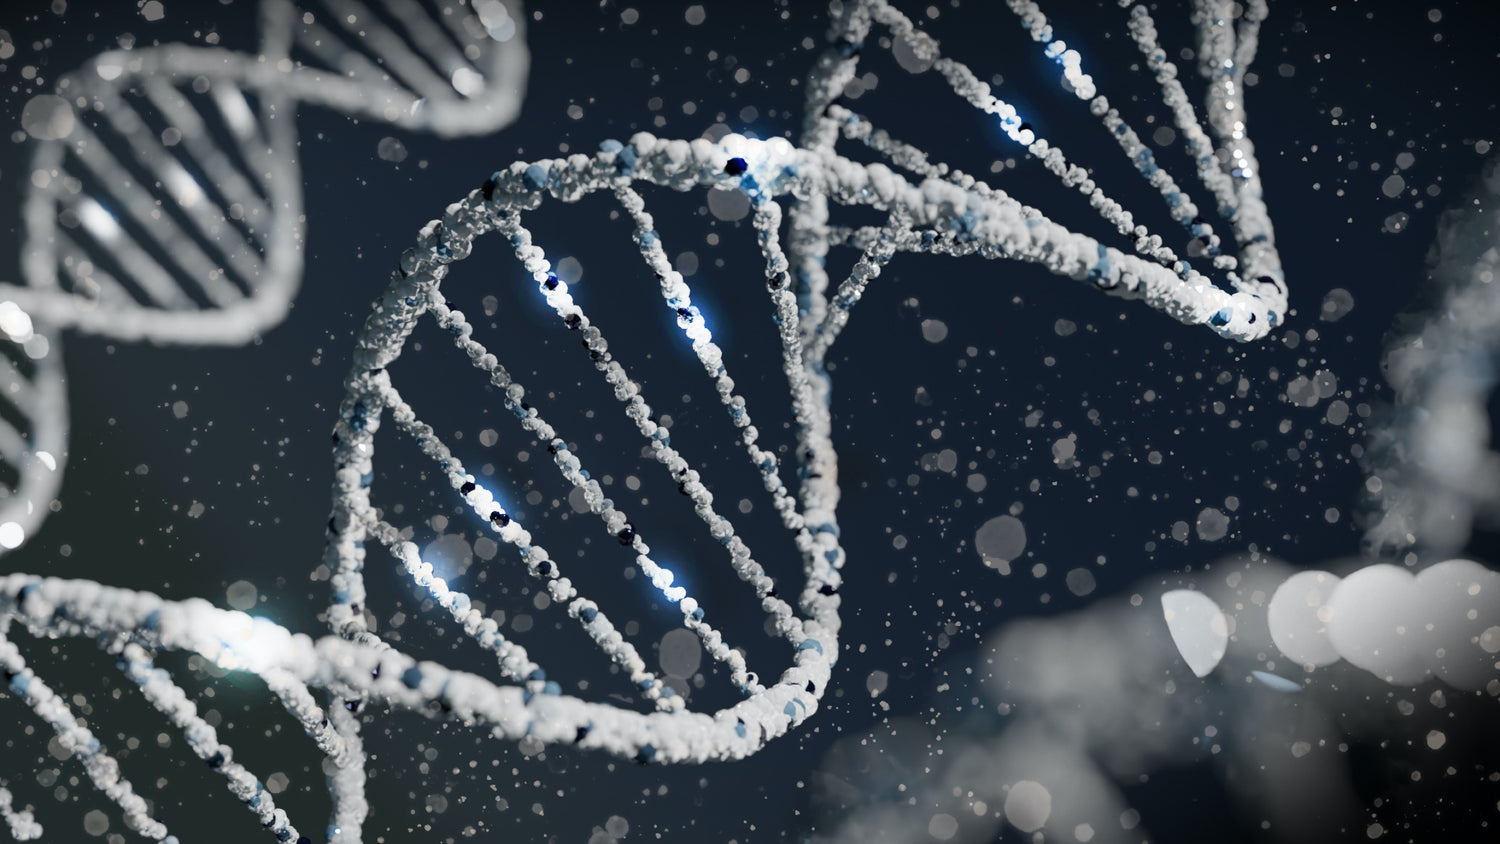 DNA Telomere Analyse Genanalyse Gentest dnatest gesundheit prävention krank gesund präventiv vorbeugung ernährung nahrung gene